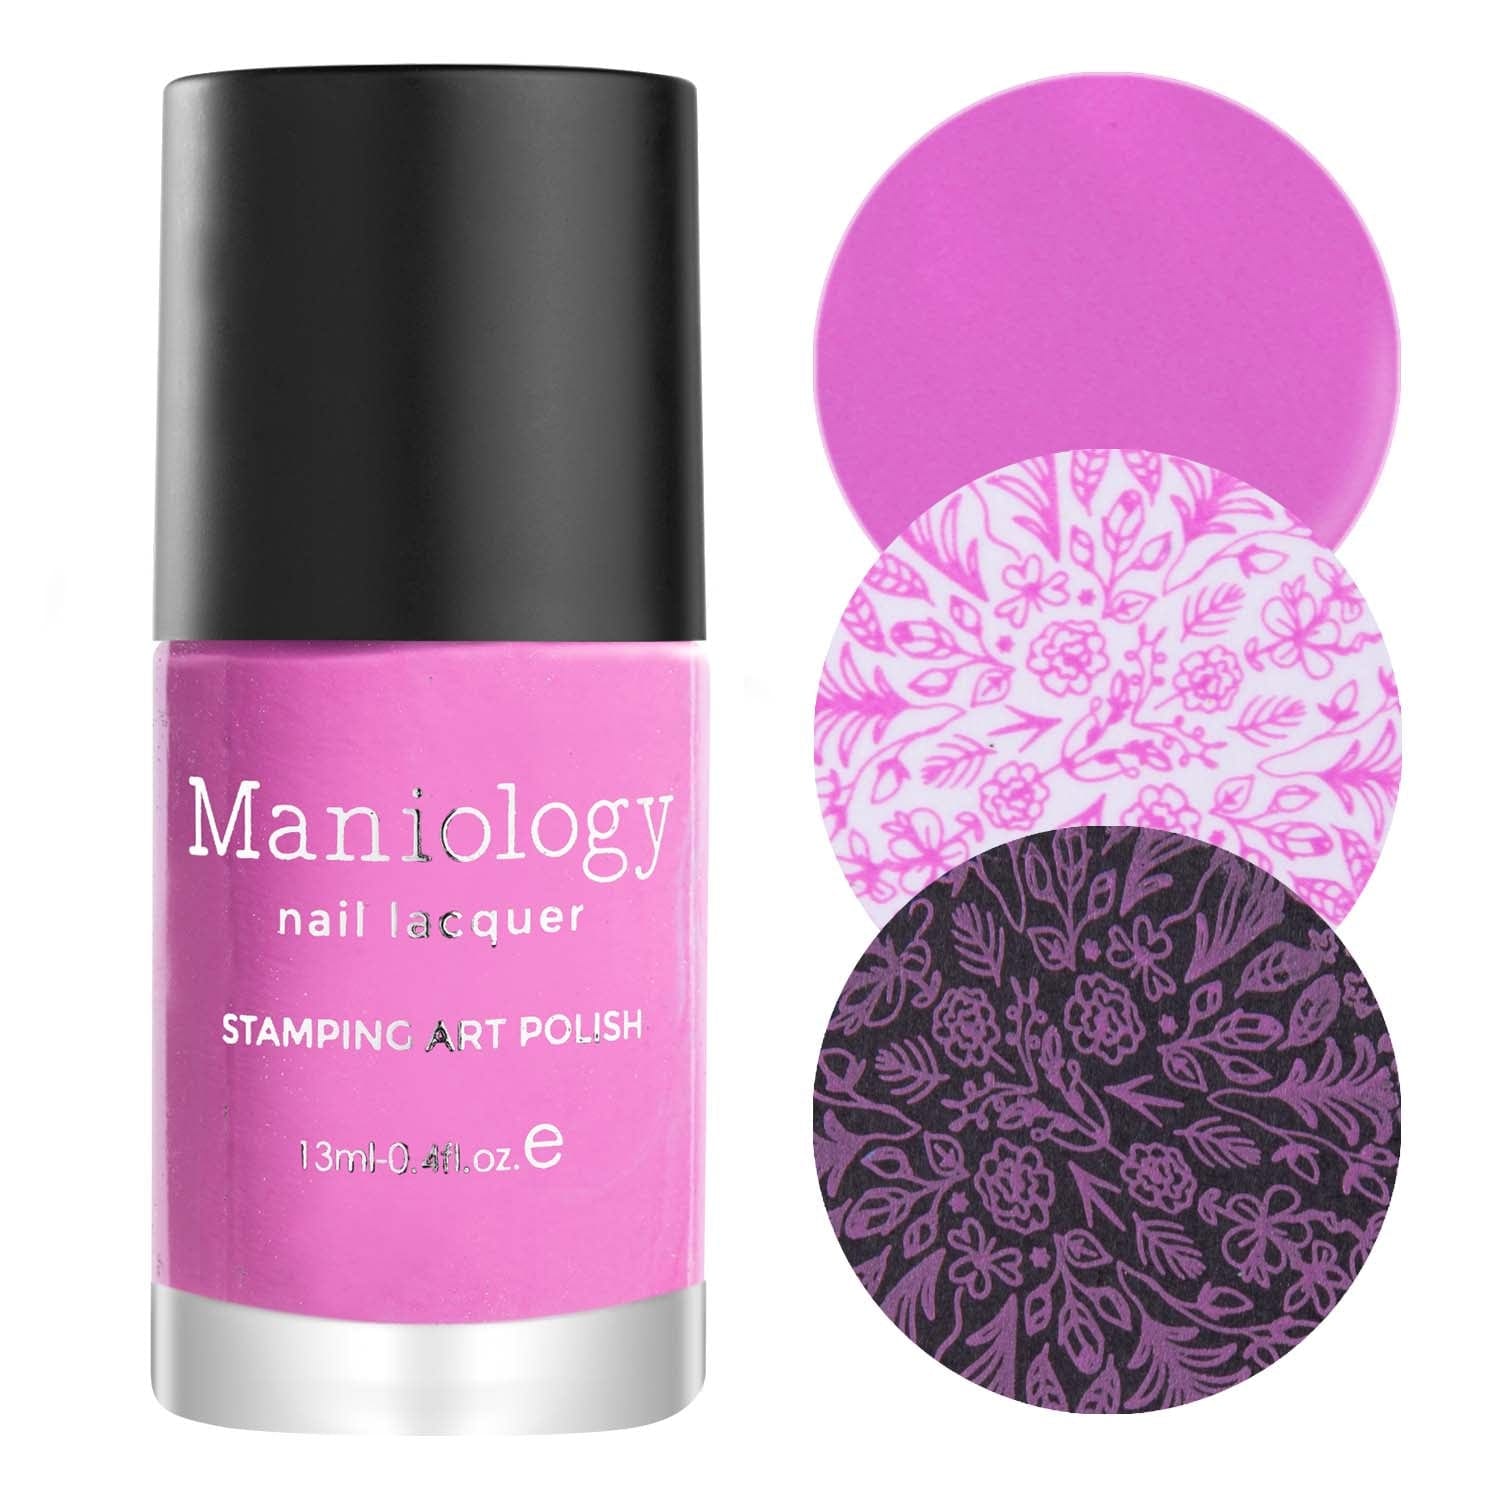 Stamping Maniology Cream Rose Pink Primerose Polish |